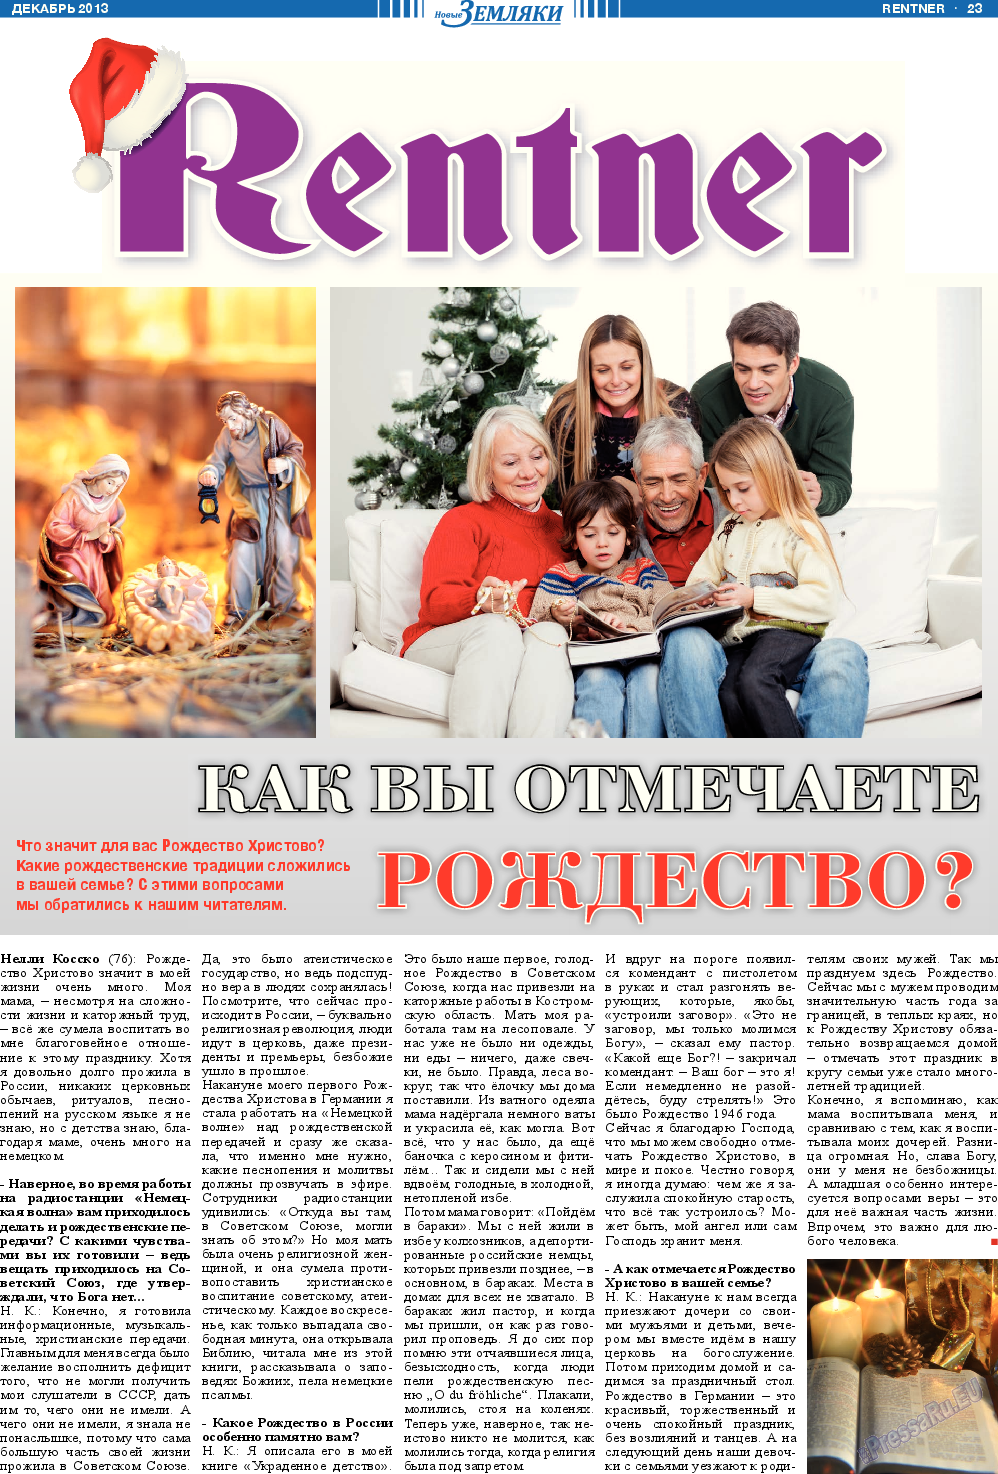 Новые Земляки, газета. 2013 №12 стр.23